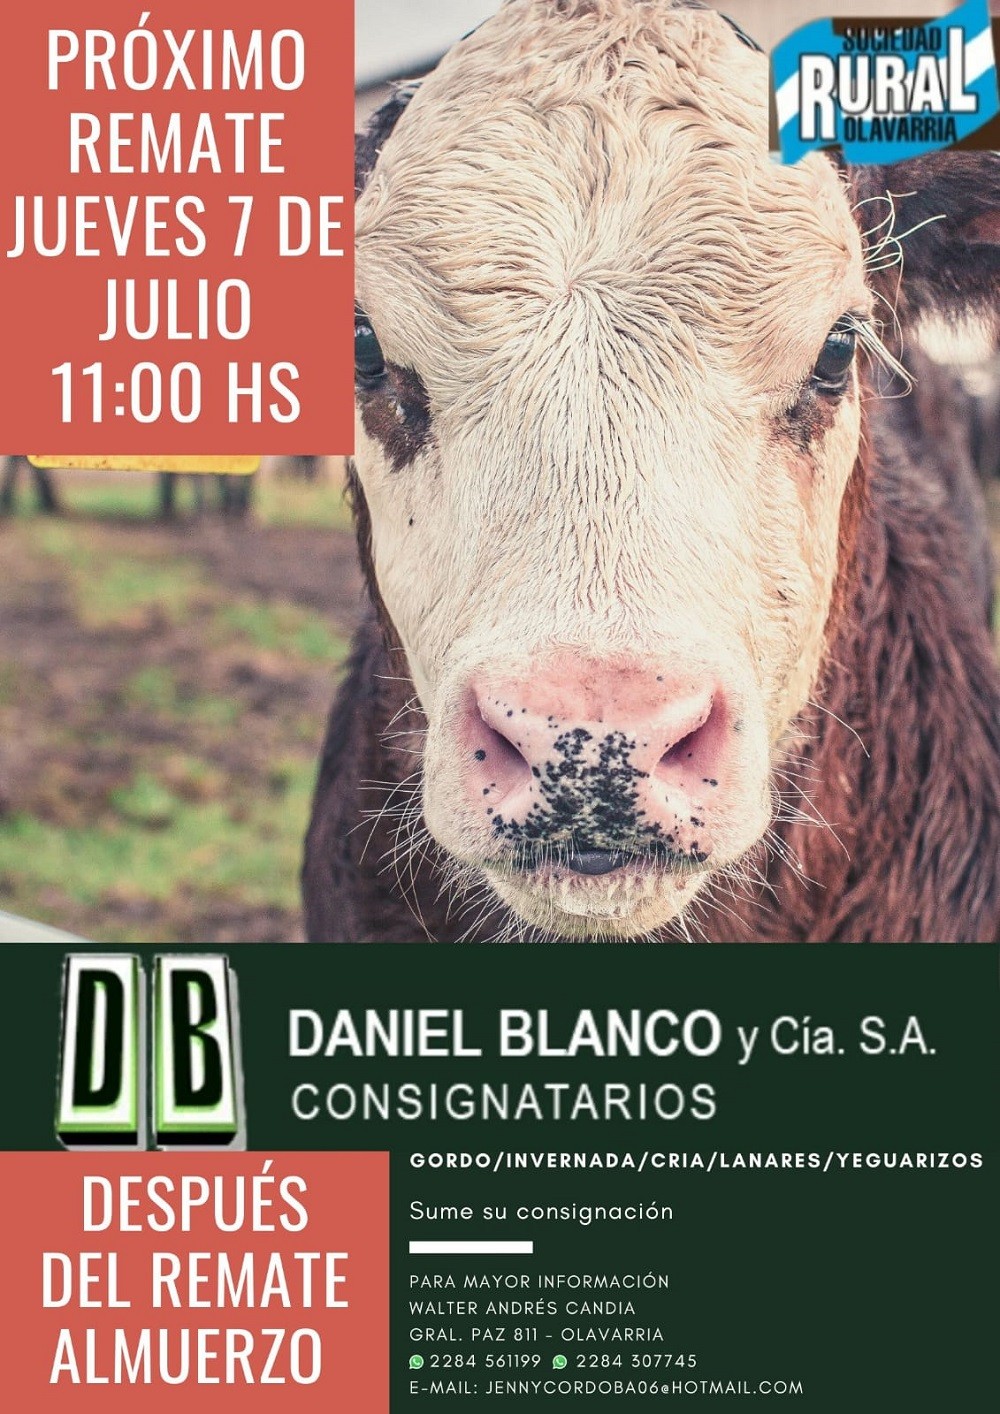 El jueves 7 se realiza un nuevo remate de la firma Daniel Blanco y Compañía